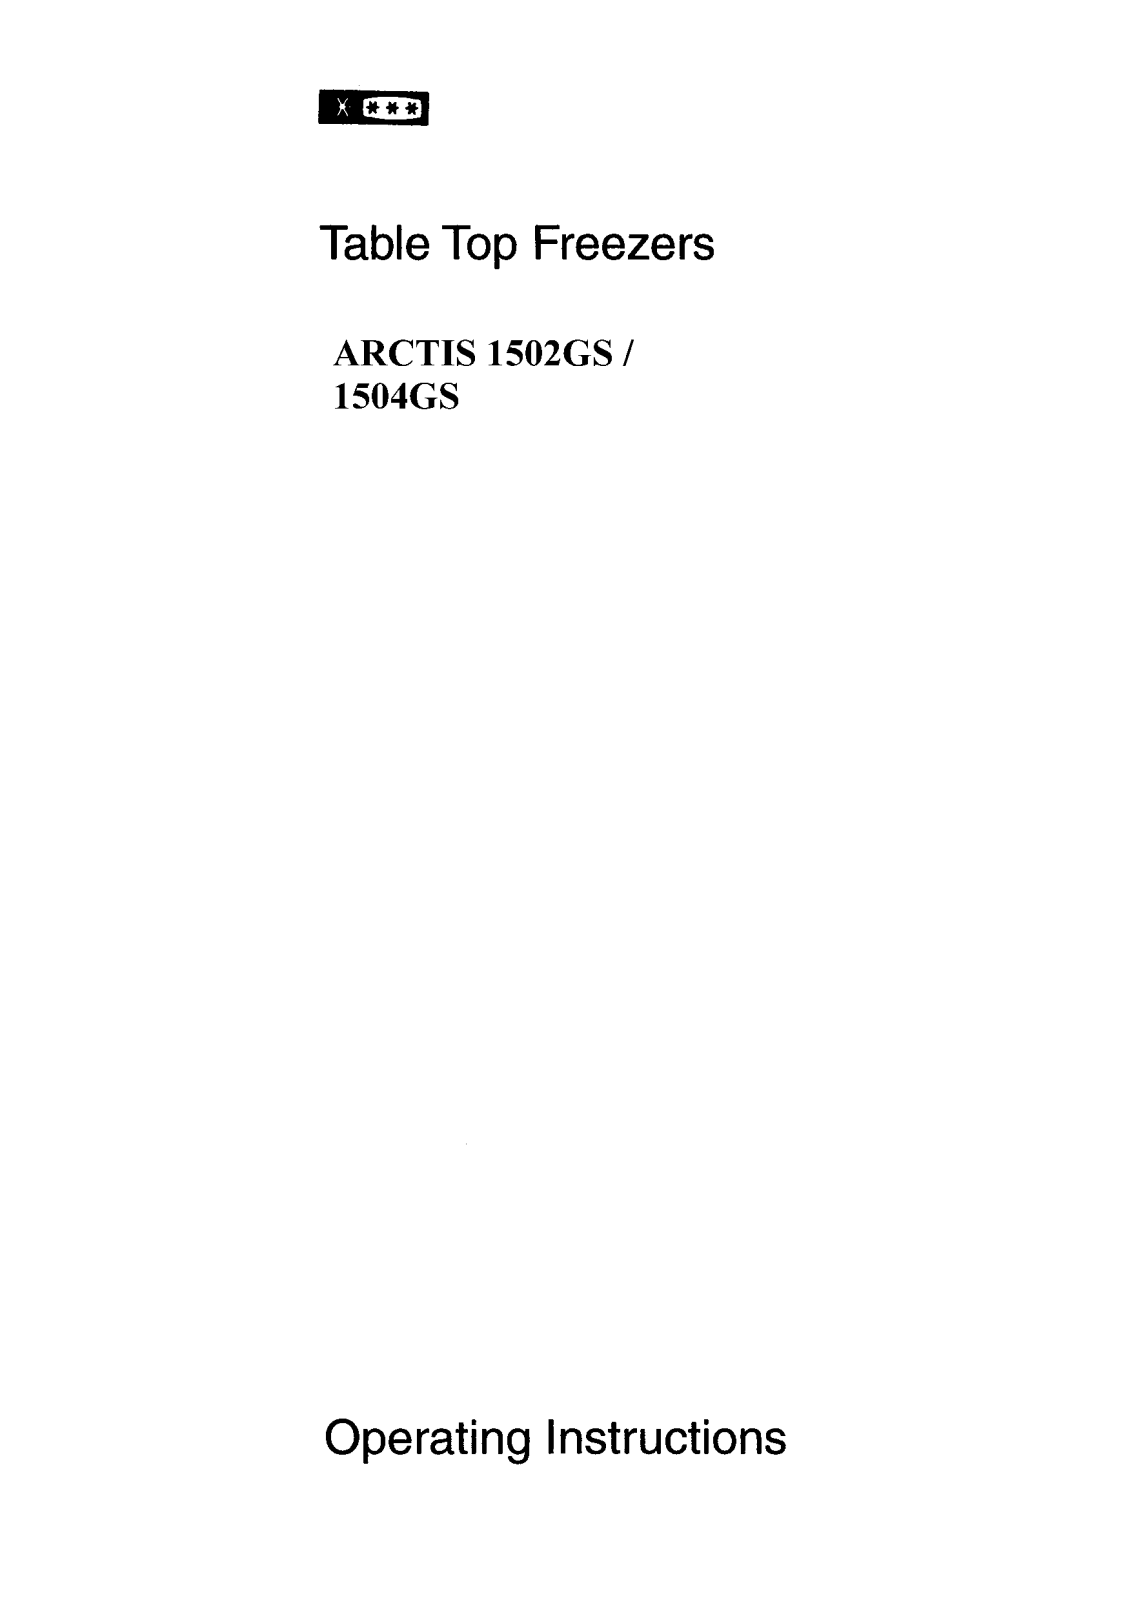 AEG-Electrolux ARCTIS1504GSA, ARCTIS1502GSGB, ARCTIS1502GS User Manual